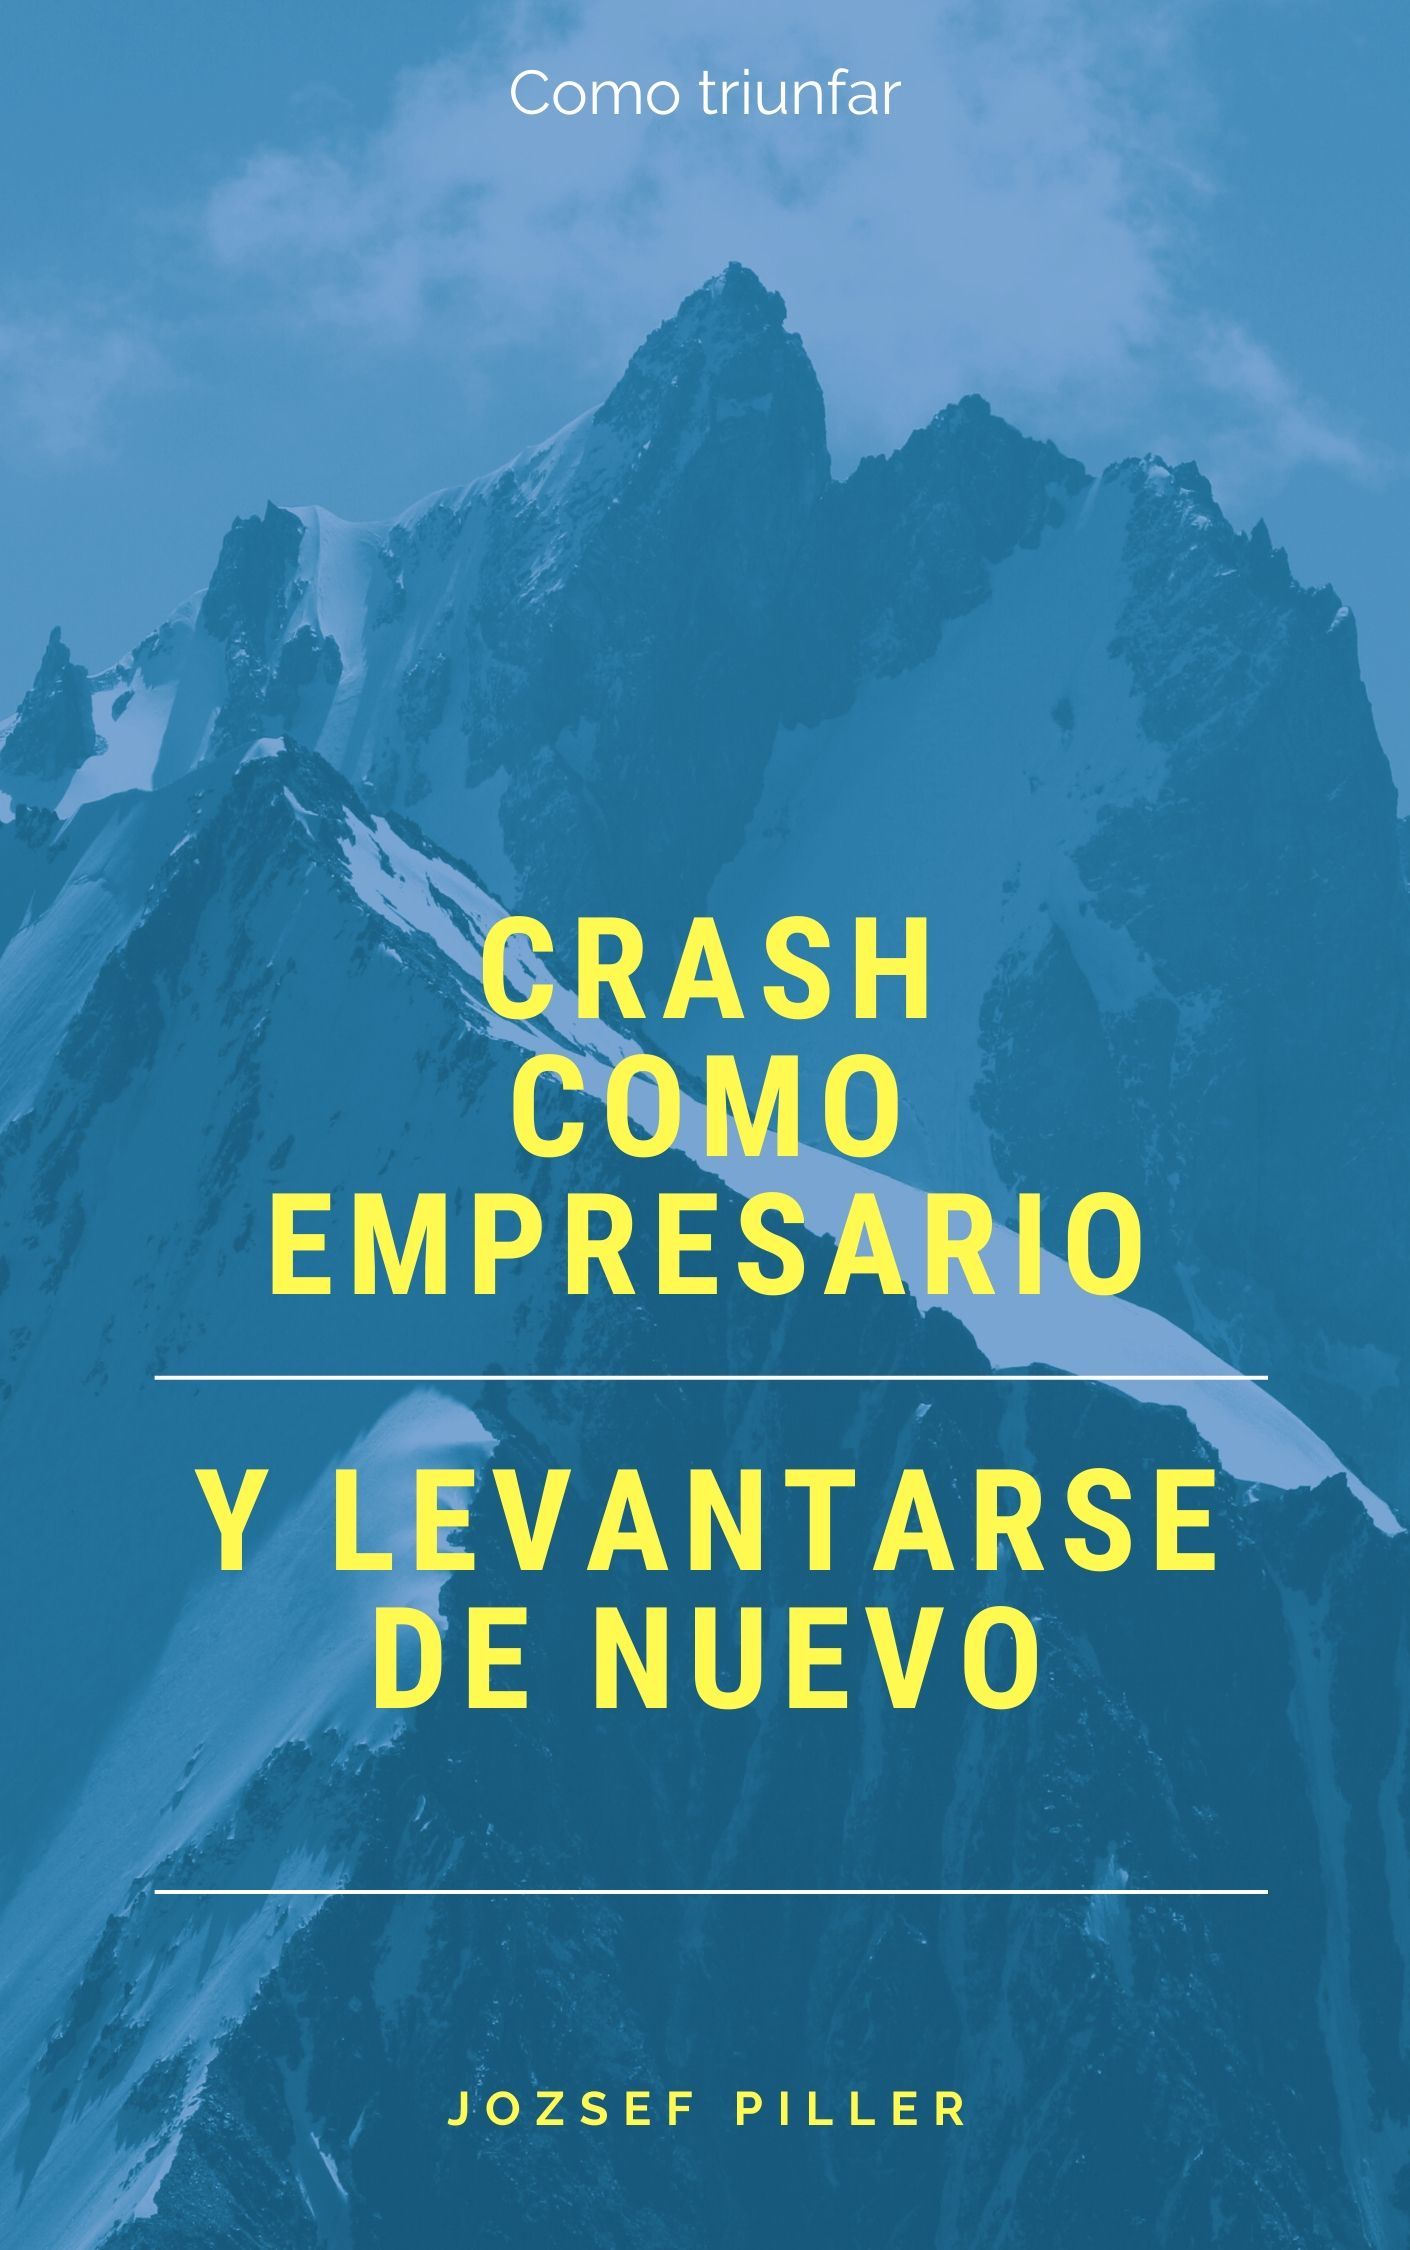 Crash como empresario y levantarse de nuevo, eBook by Jozsef Piller